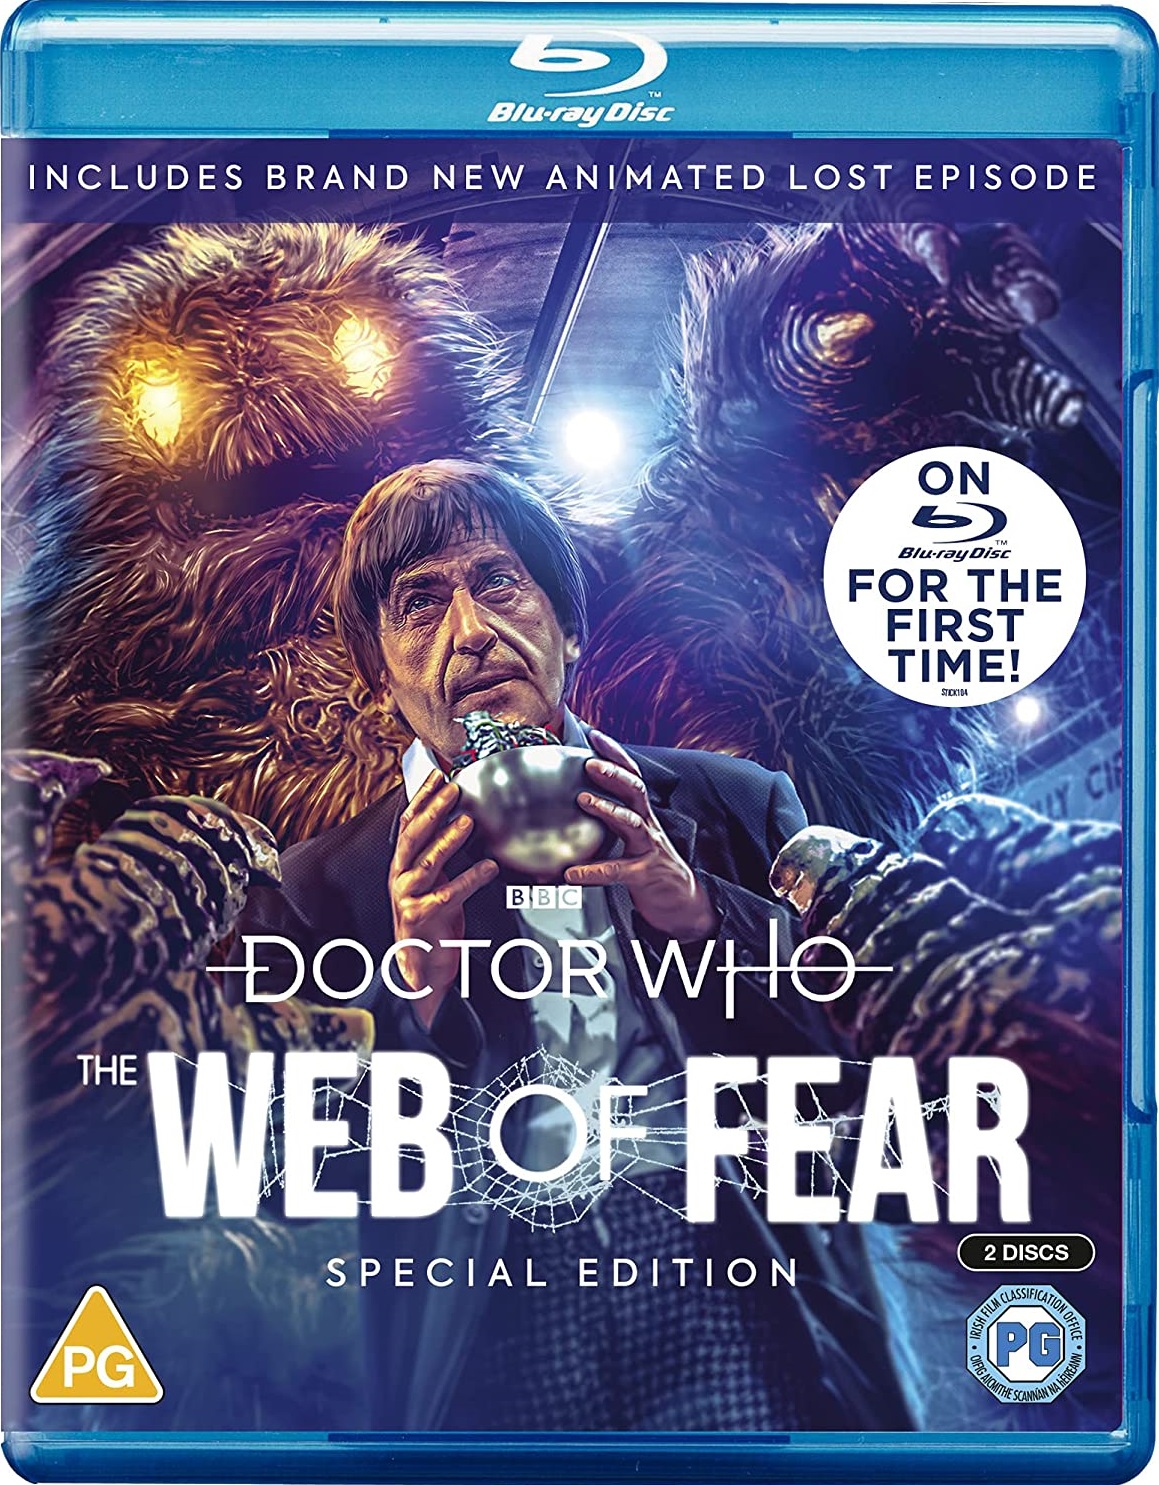 Region B Blu-ray cover